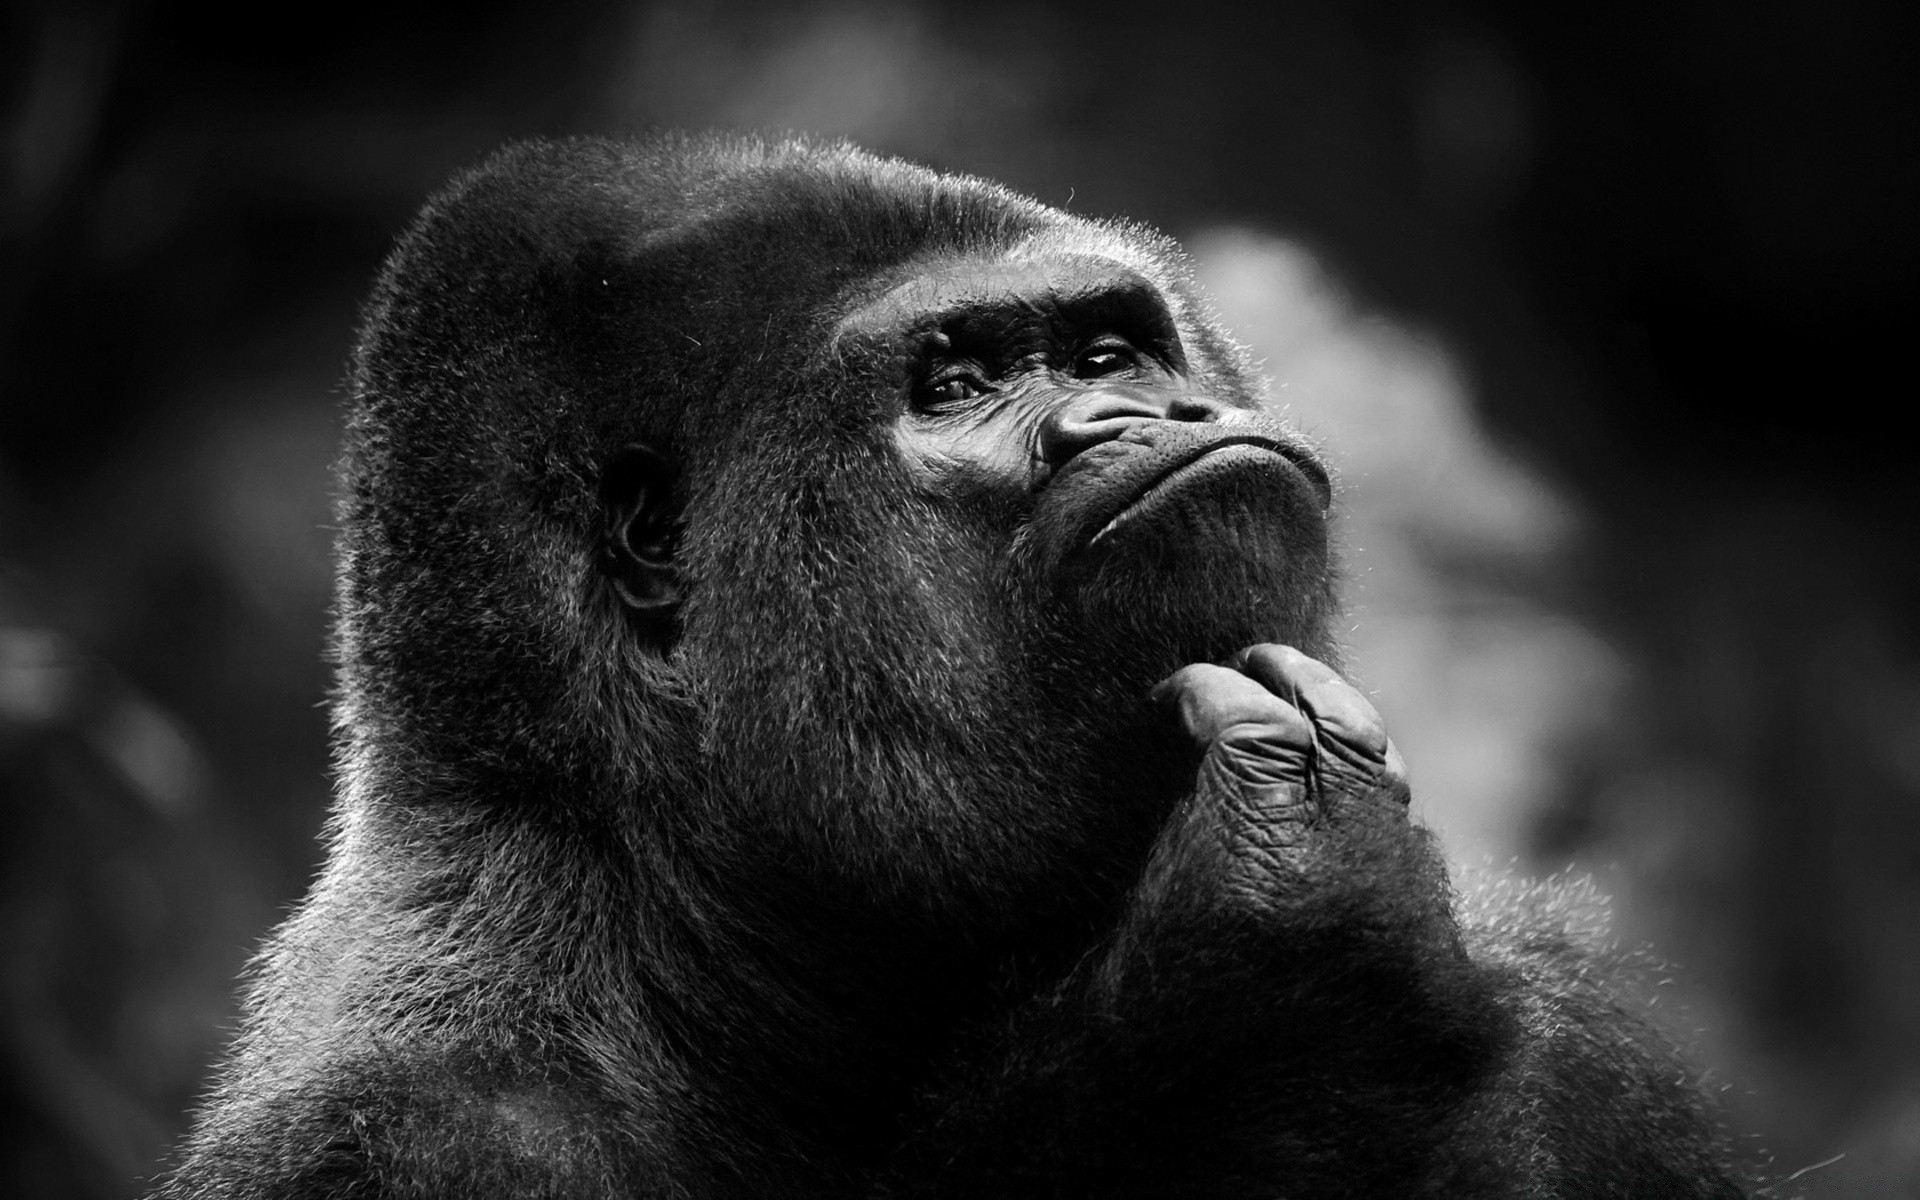 черно-белое обезьяна предстоятель кривляться млекопитающее дикой природы горилла портрет шимпанзе зоопарк мех макаки животное один